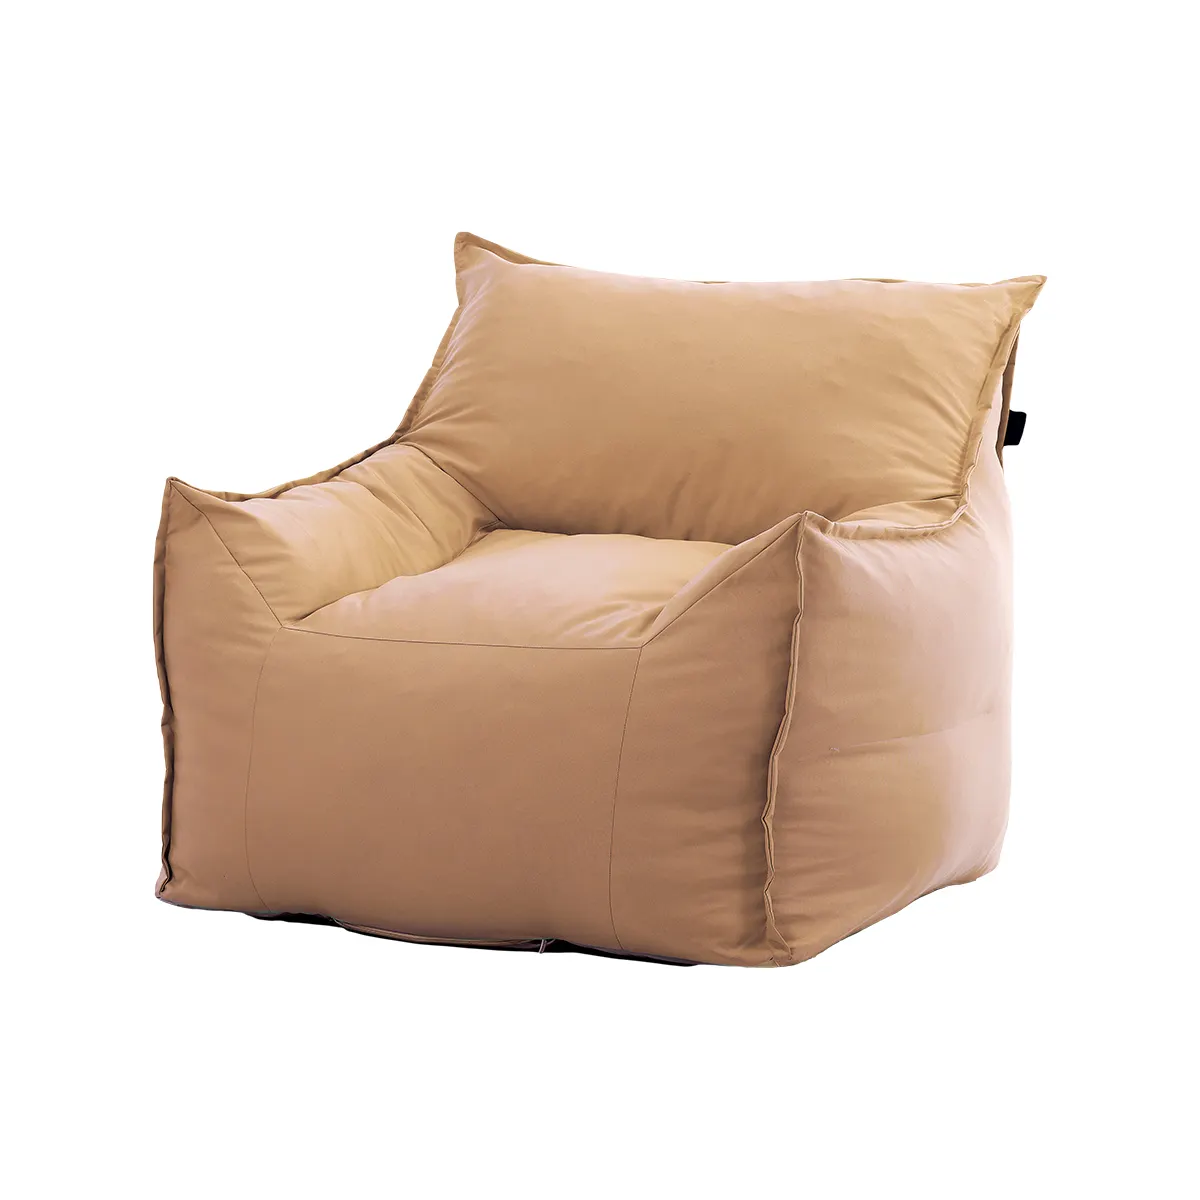 Пенопласт Puff Lounge Beanbag кресло с подставкой для ног диван-кровать комплект недорогой диван для гостиной